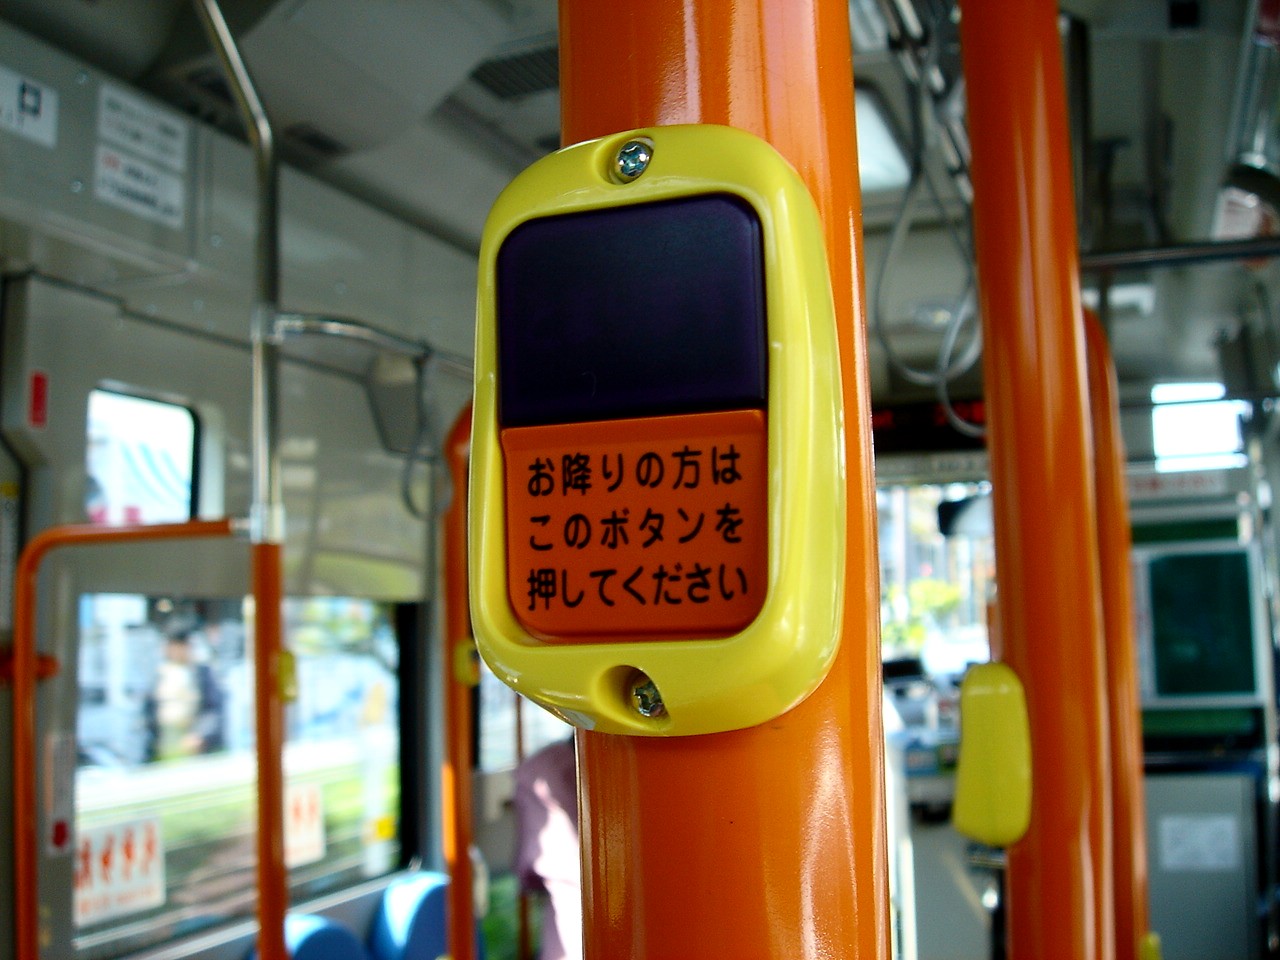 ビビット07part1 おさんぽバス舞浜線 Livedoor Blog ブログ